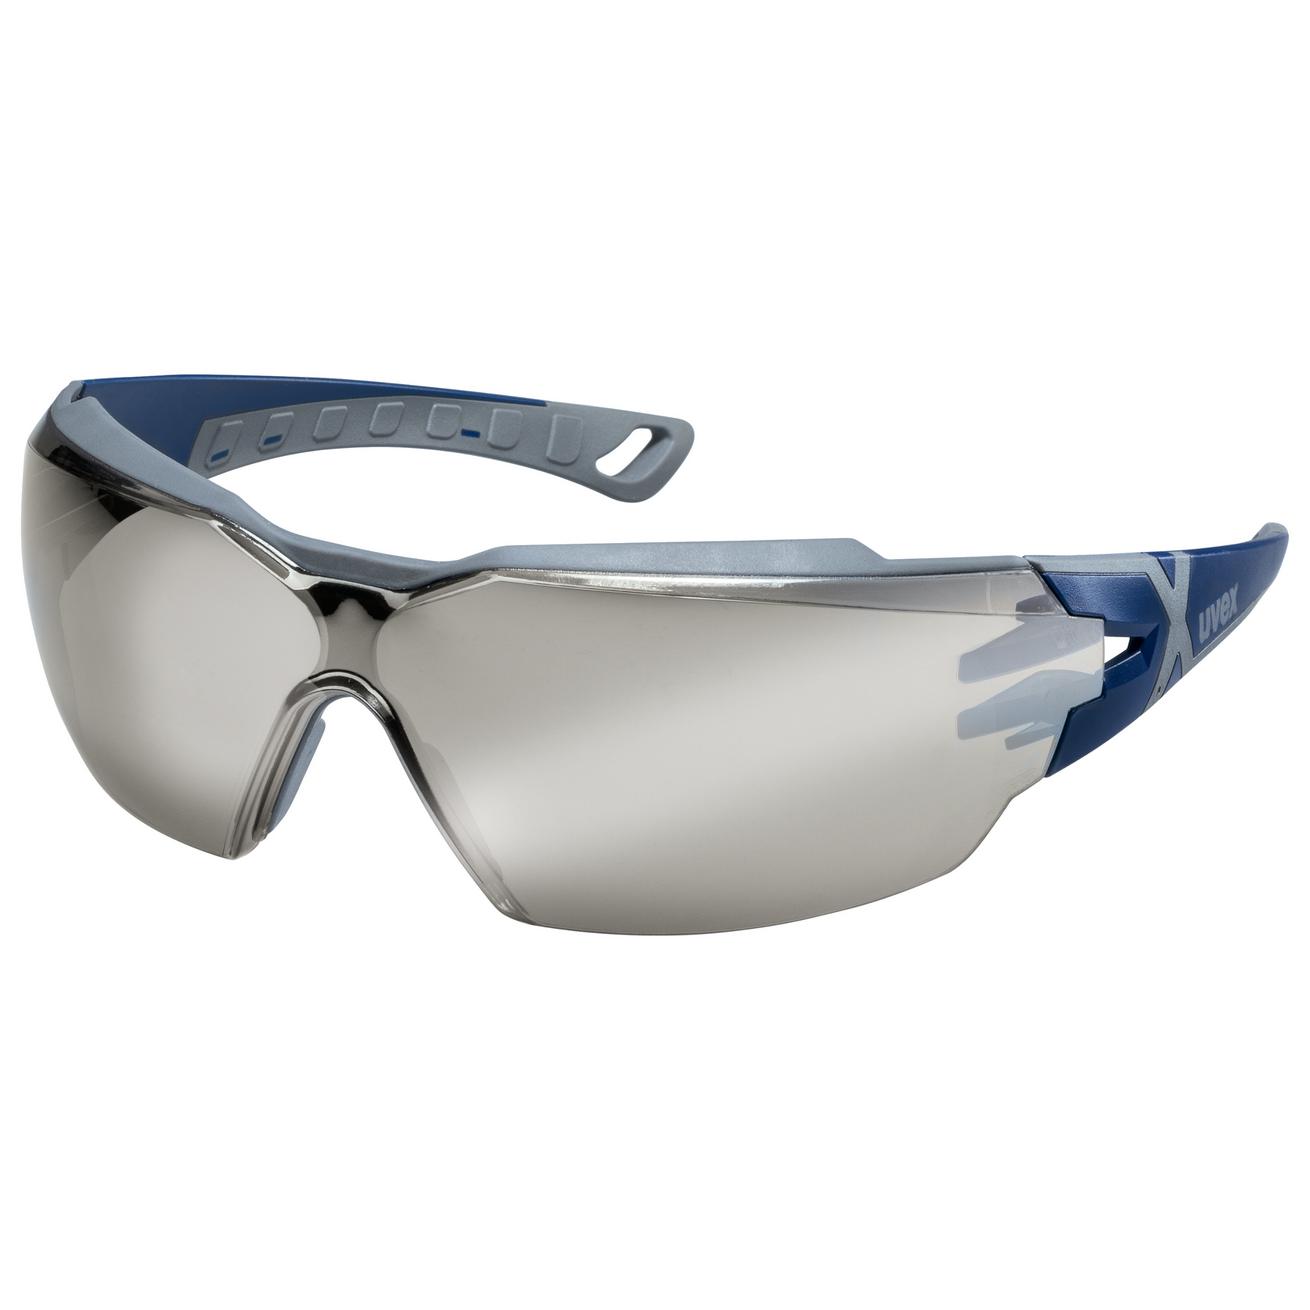 Brýle uvex pheos cx2 Kód produktu: 9198885, Provedení zorníku: PC zrcadlovka/UV 5-3,1; vnitřní strana antifog, šedá/modrá